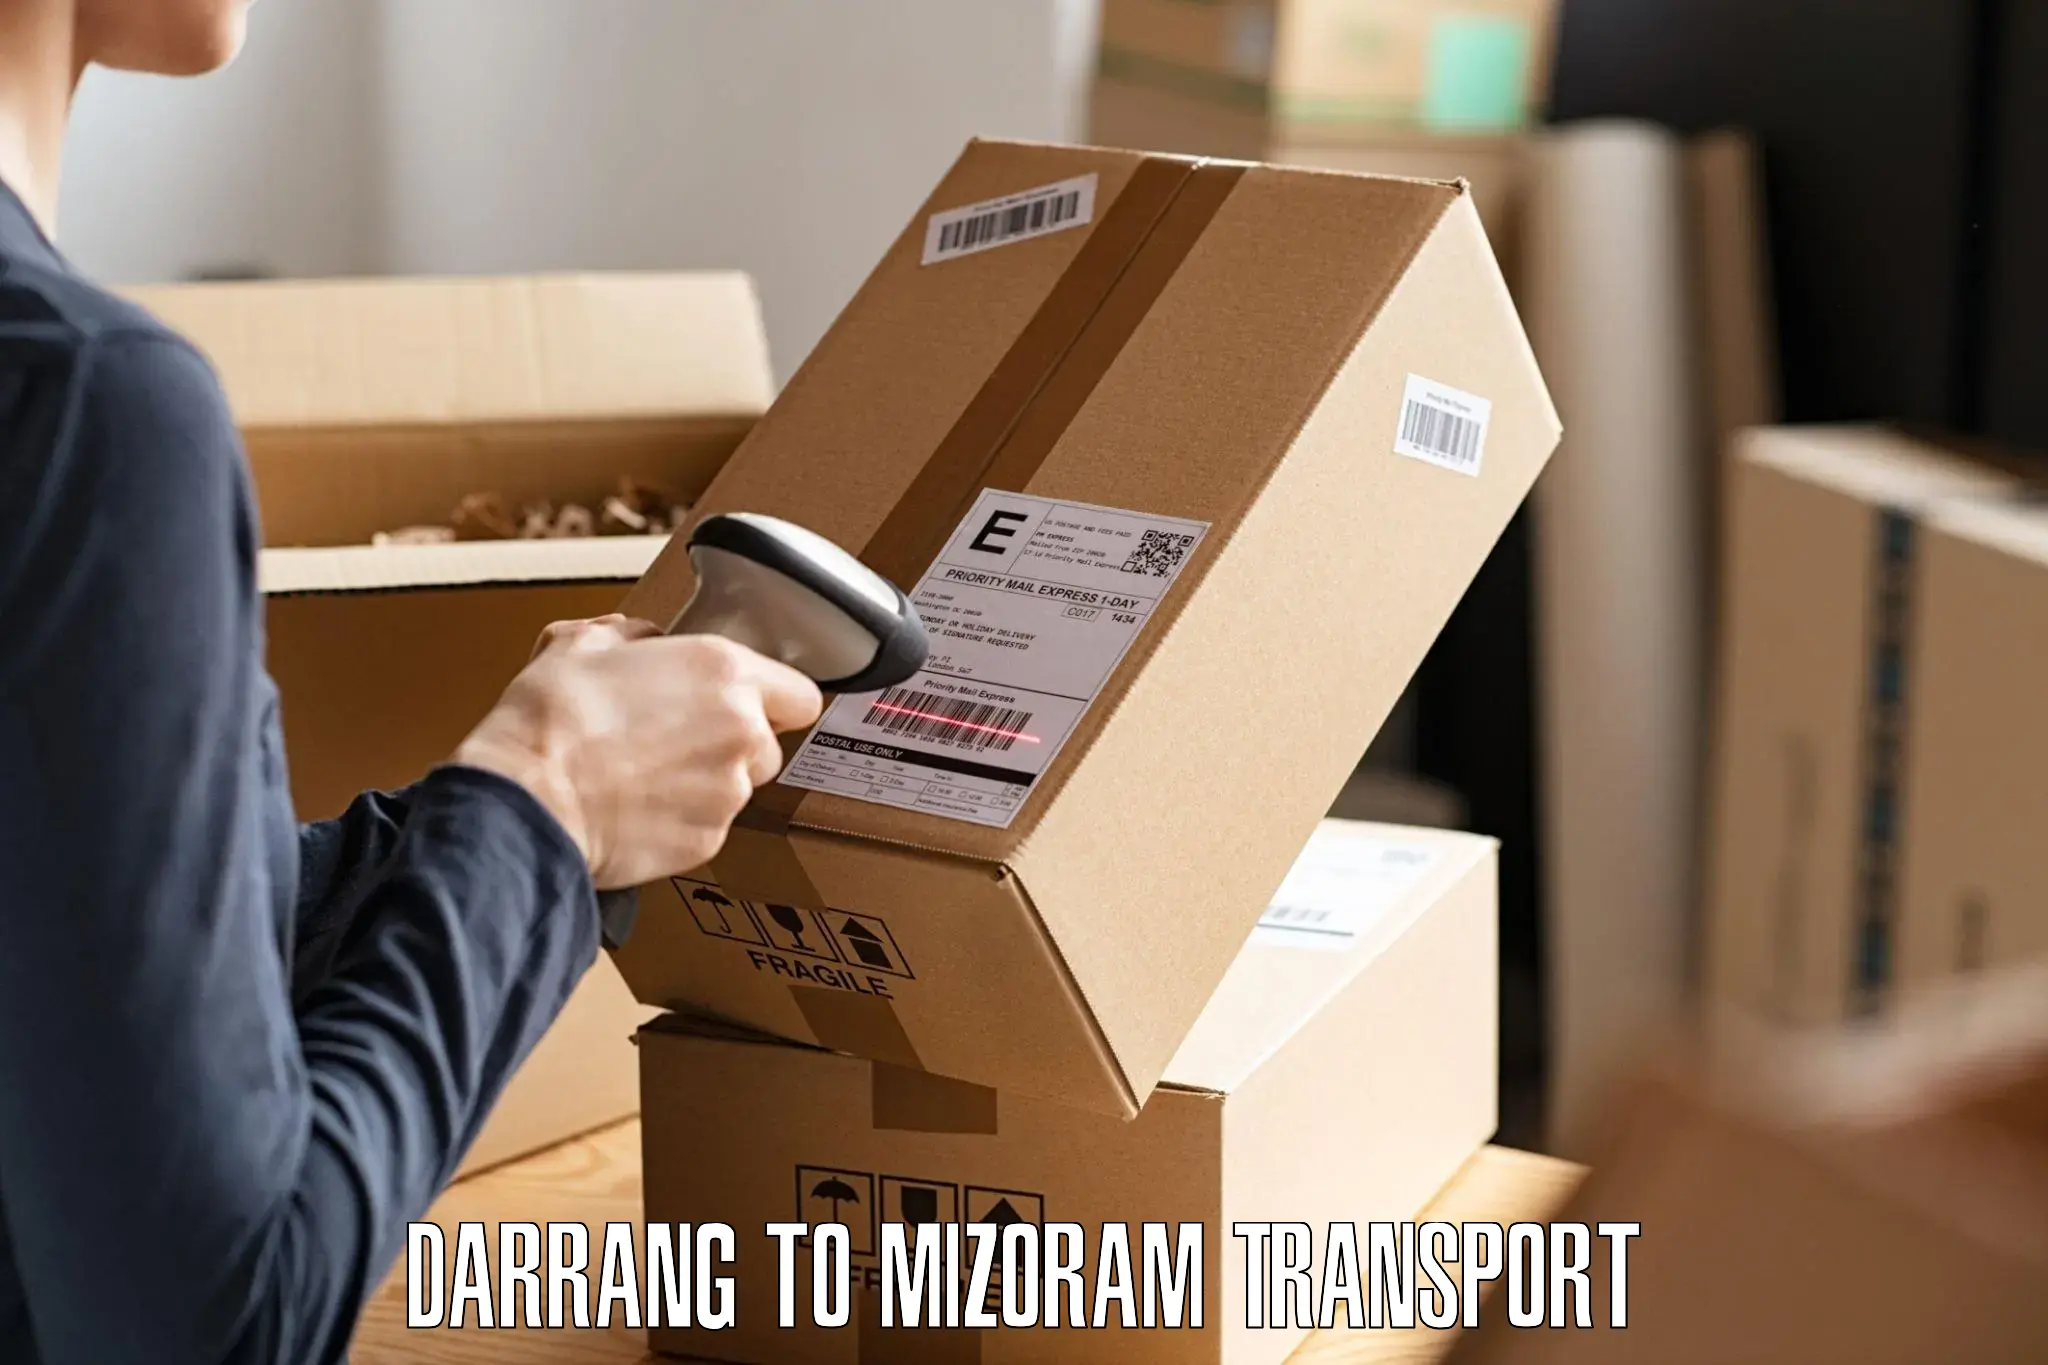 Shipping partner Darrang to Darlawn